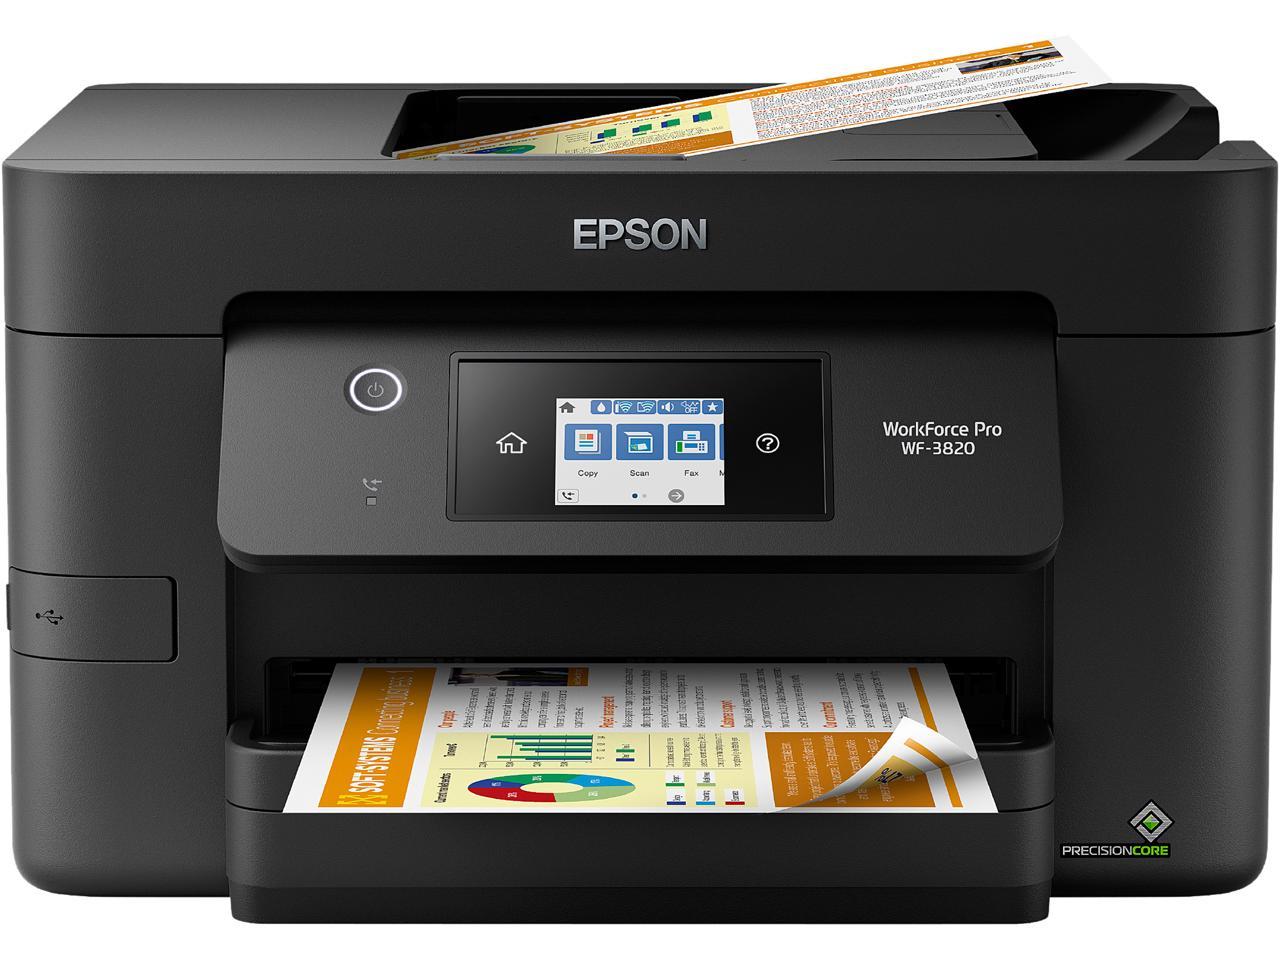 Epson Workforce Pro Wf 3820 Wireless All In One Inkjet Printer 8910